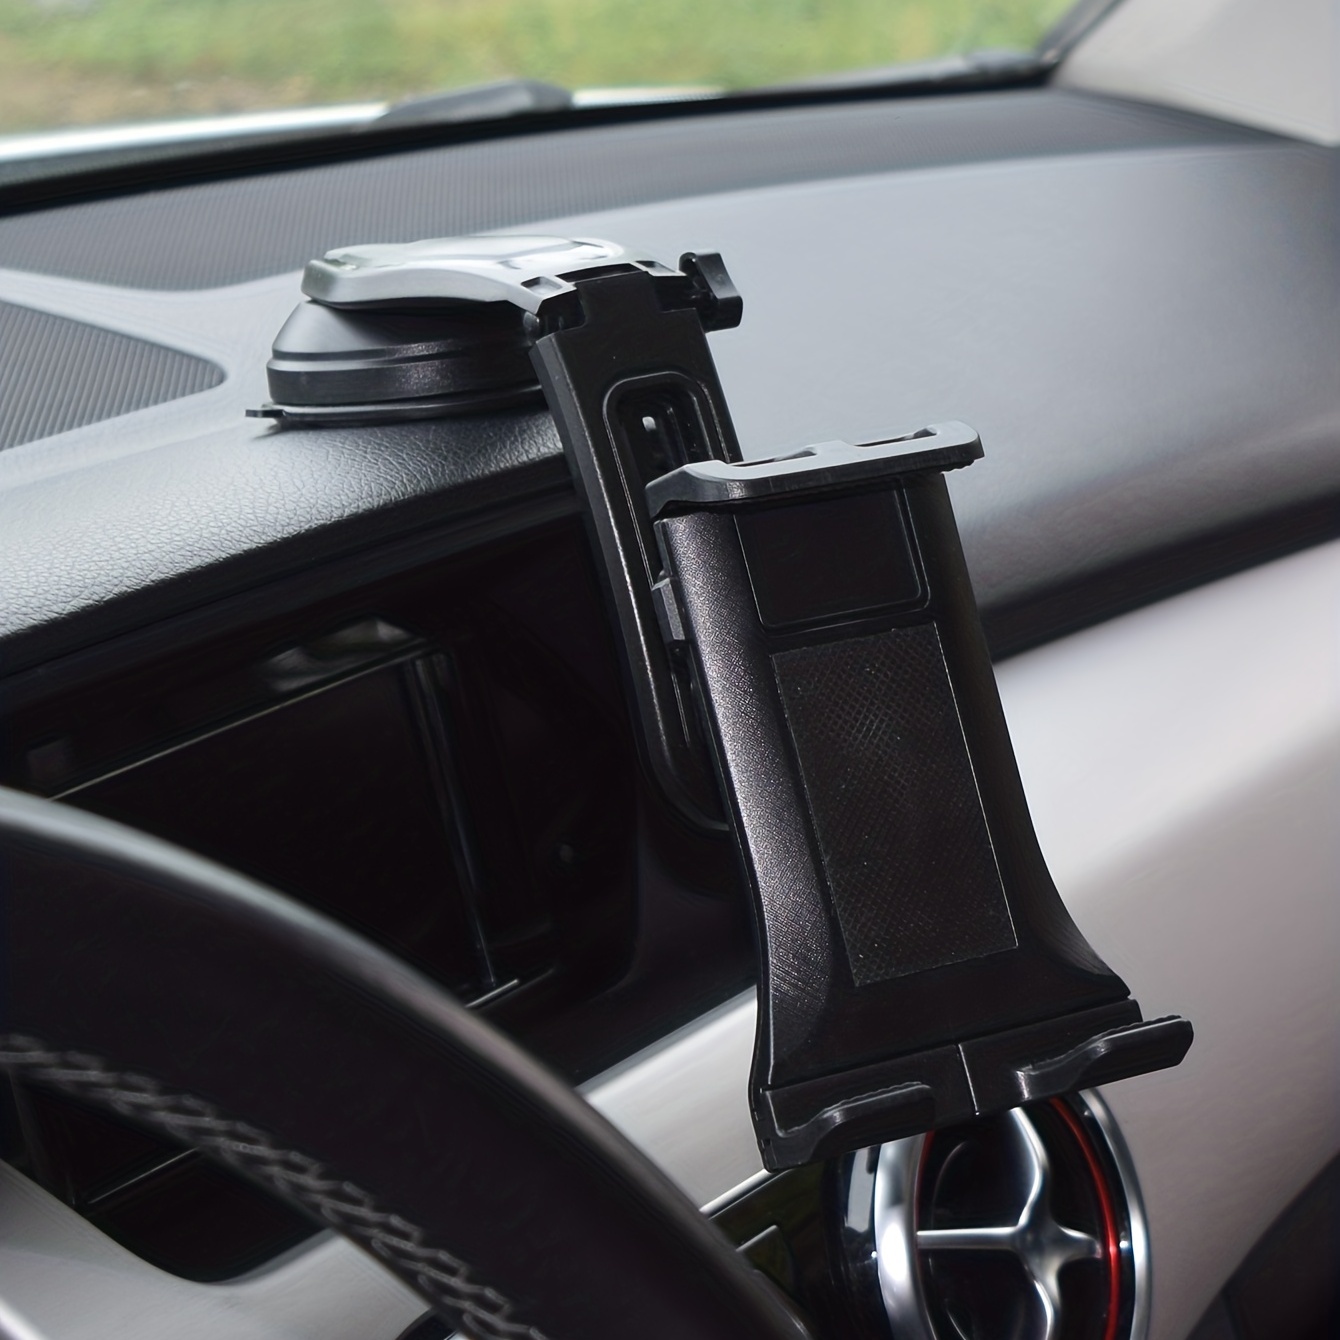 supporto tablet che vincola il tablet al volante dell'auto. Applicazione  all'interno di autovetture presso autosaloni. Possibilità…